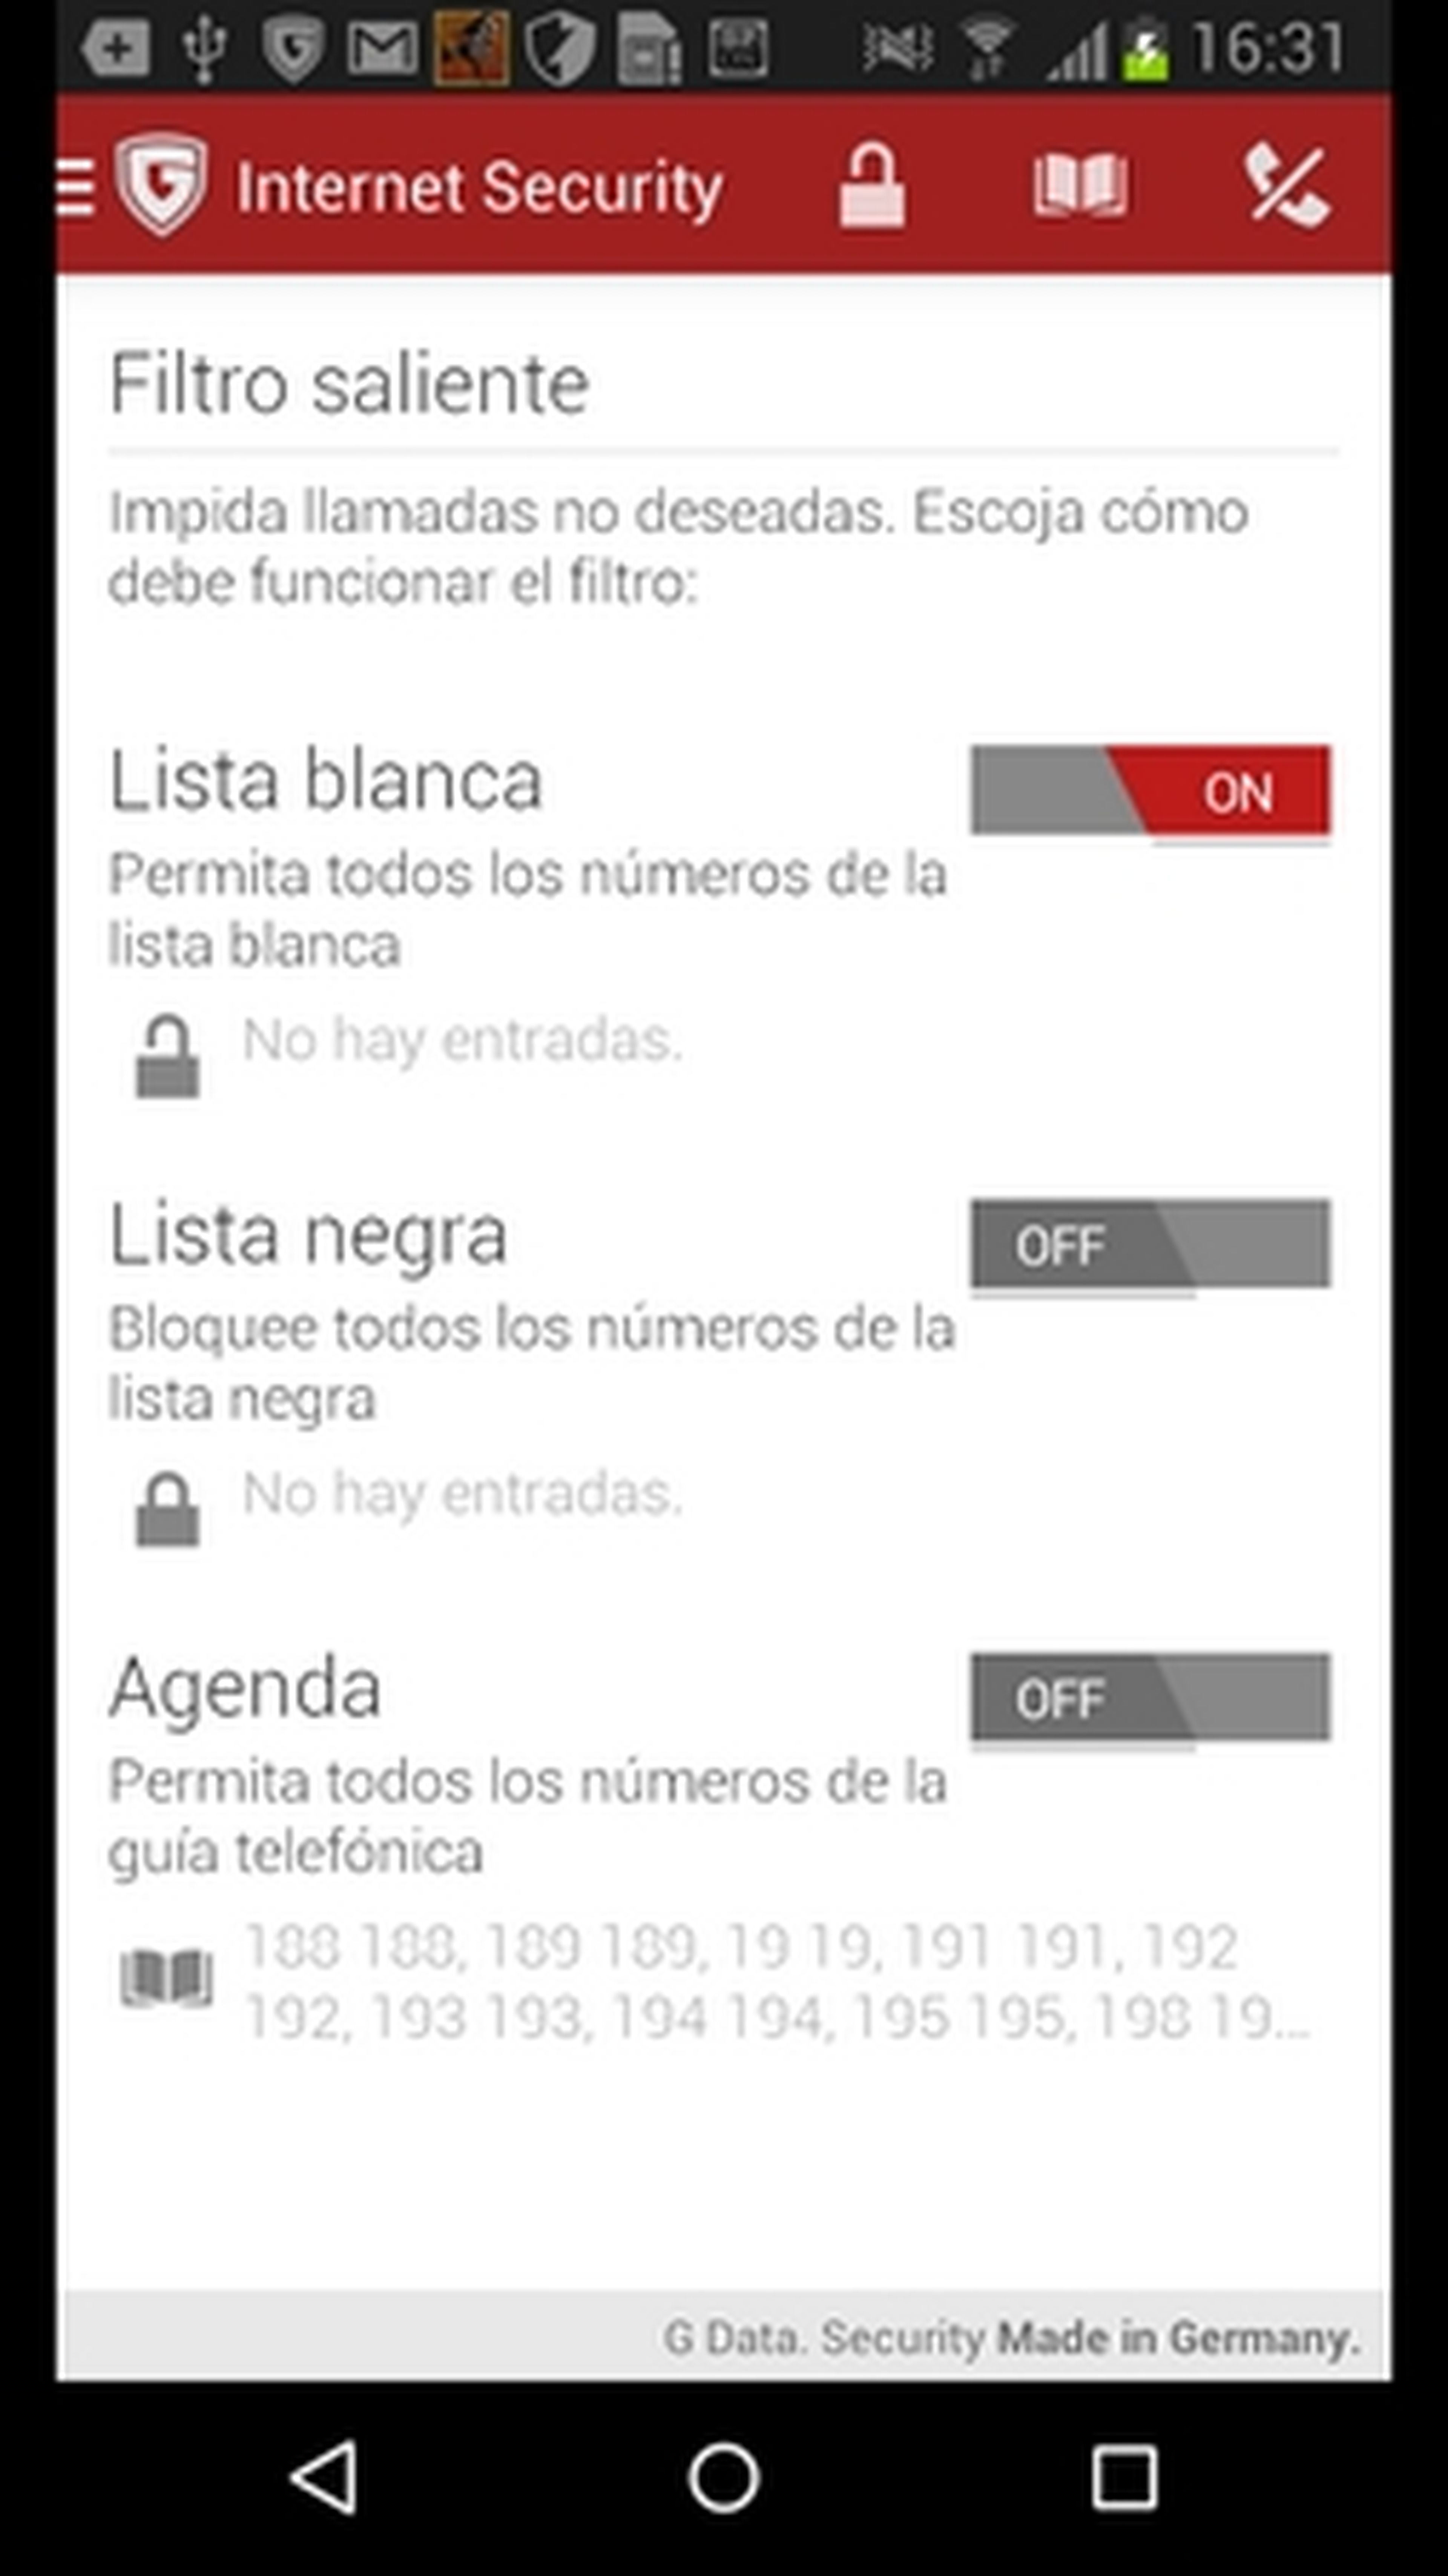 G DATA Internet Security para Android protege del malware en el smartphone